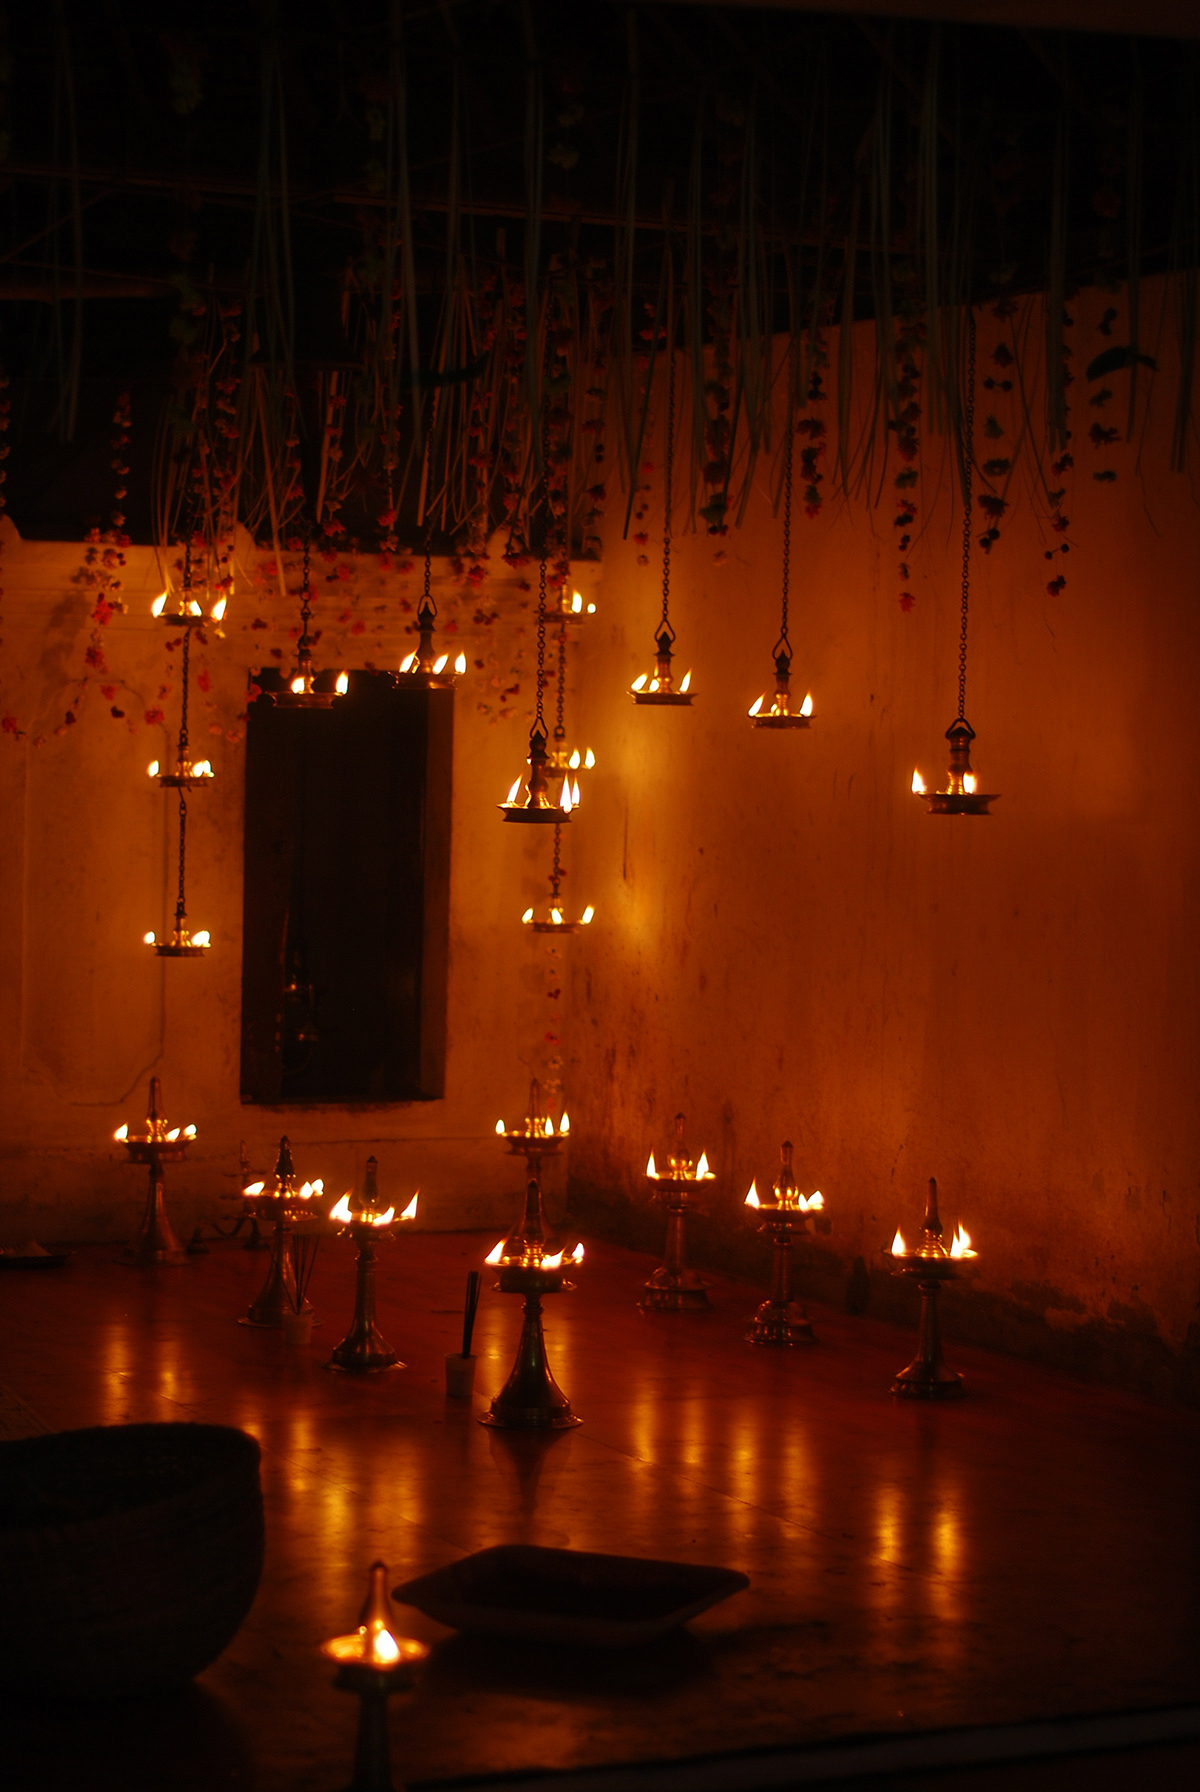 kerala kalaripaat temple festival lamps lights temple lights Kerala temple